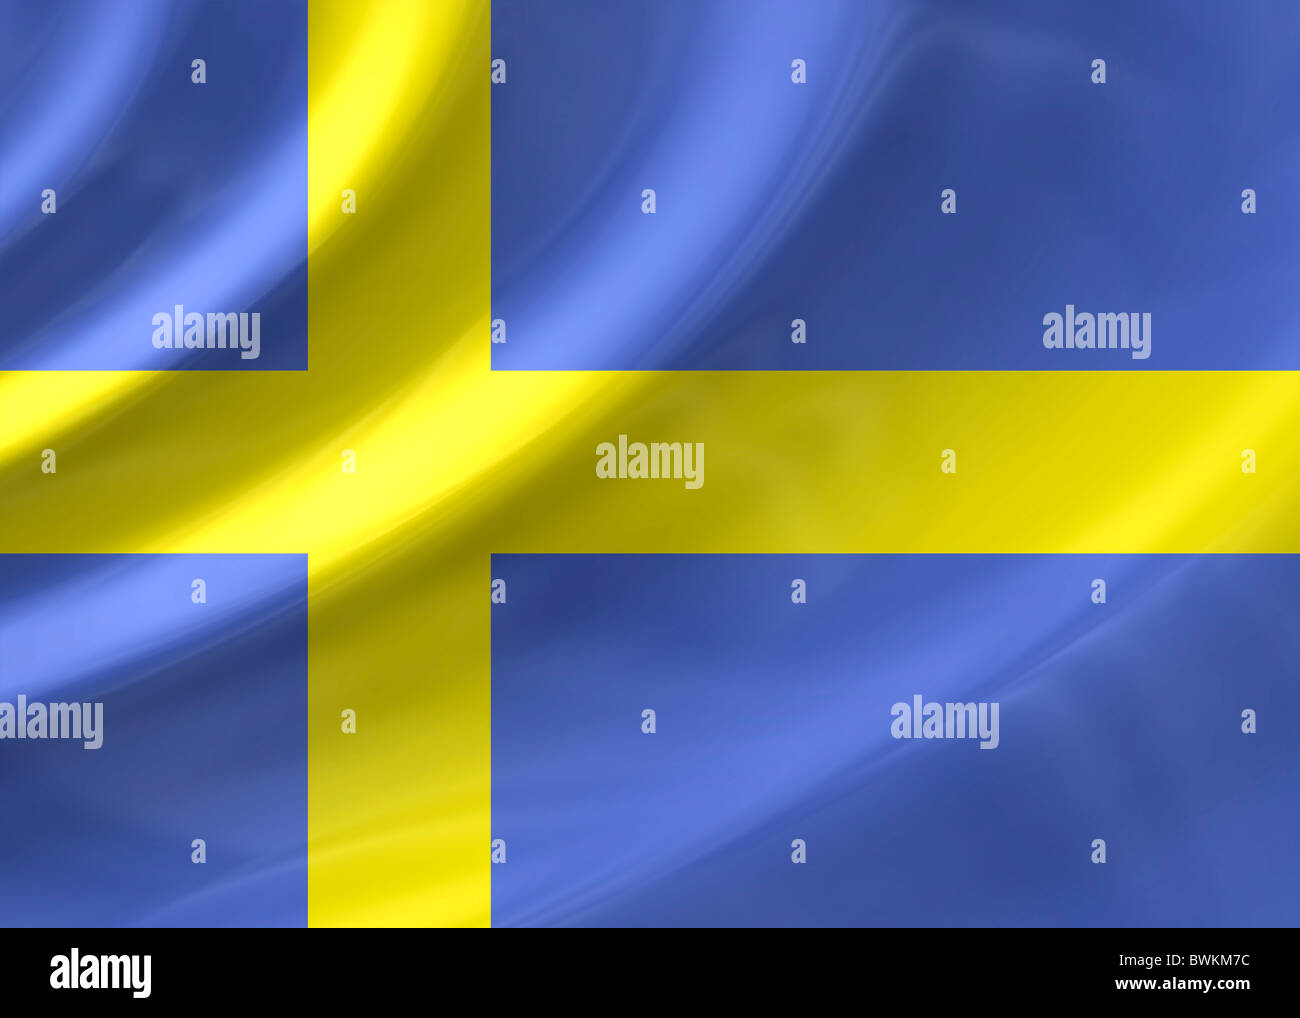 Sweden flag Stock Photo